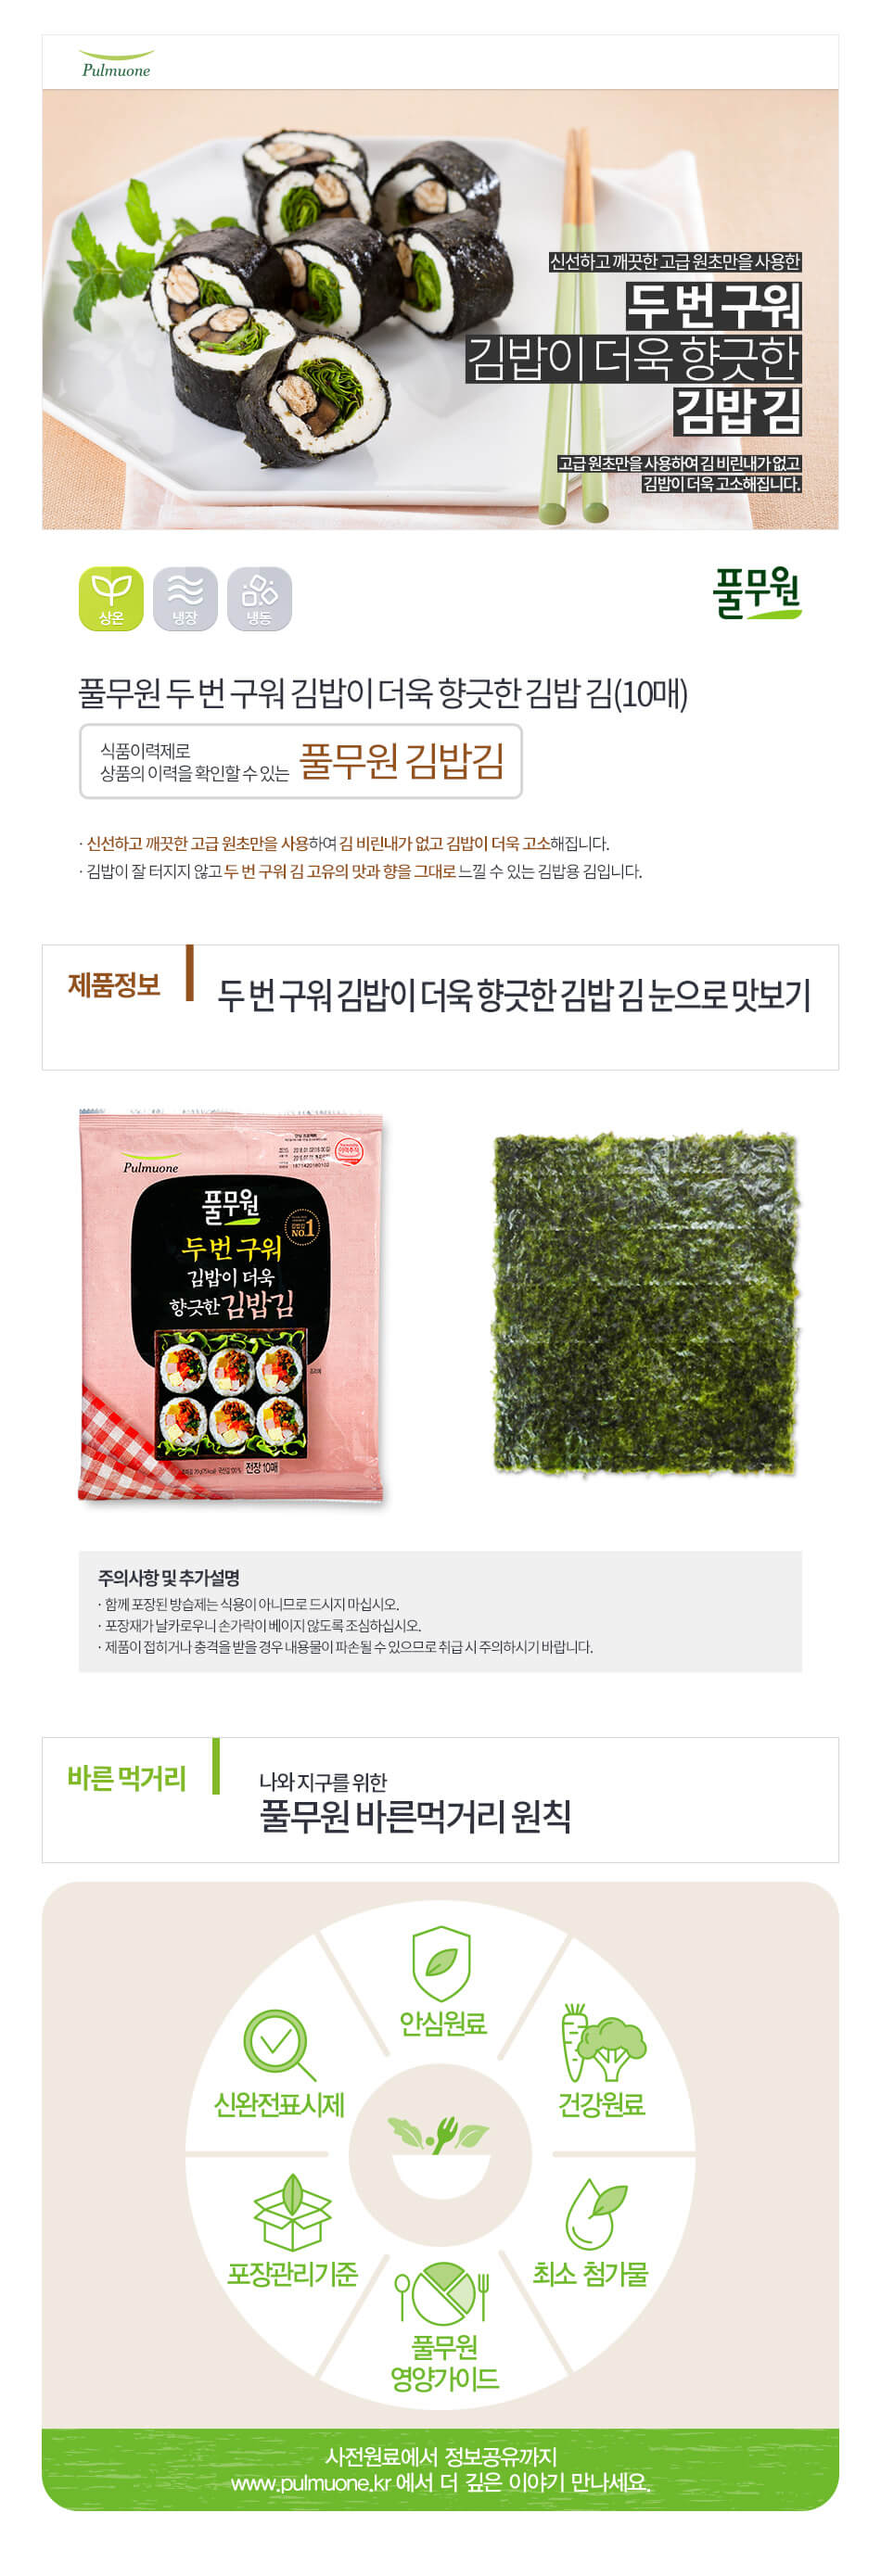 韓國食品-[圃木園] 韓式壽司用紫菜 20g(10張)